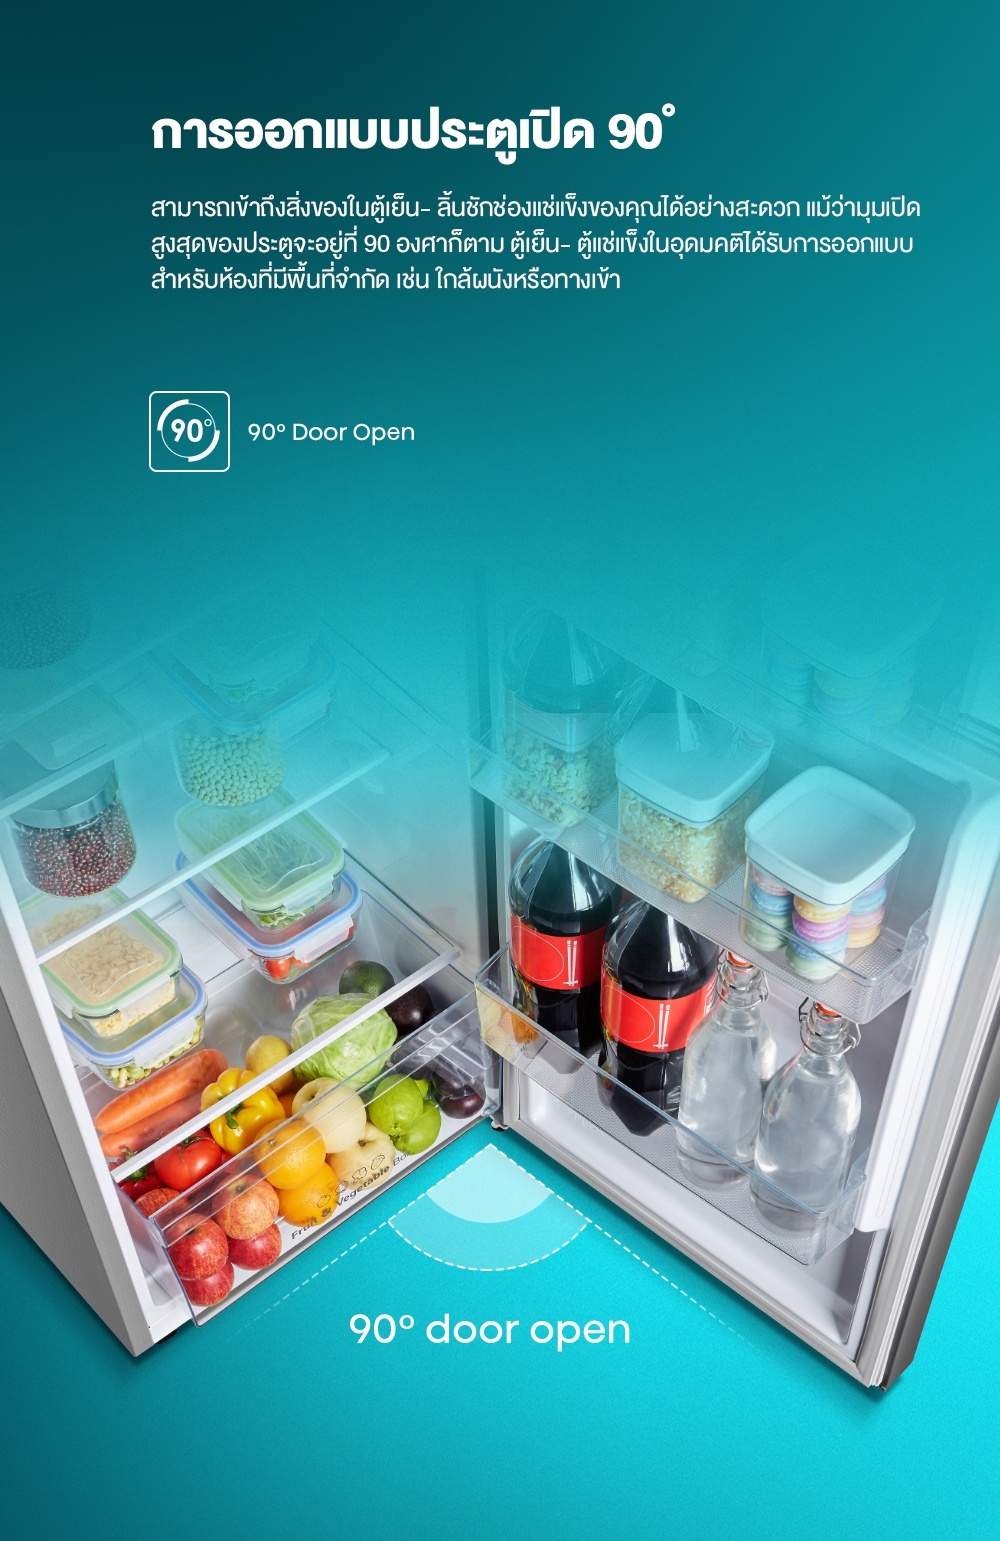 มุมมองเพิ่มเติมของสินค้า Hisense ตู้เย็น 2 ประตู : 7.5Q / 212 ลิตร รุ่น RT266N4TGN